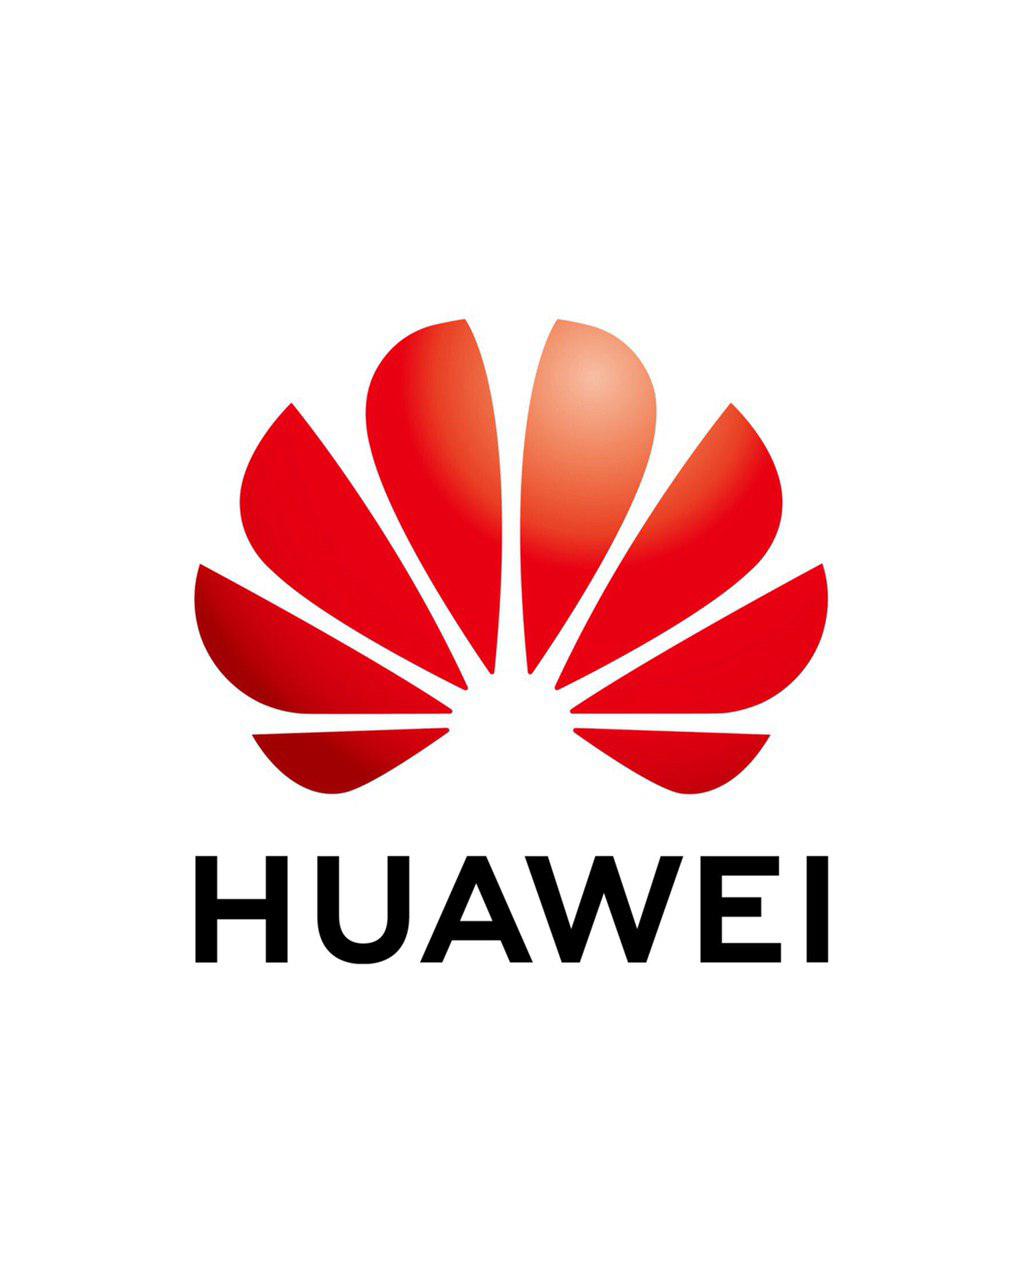 РЕД ОС установят на серверах Huawei